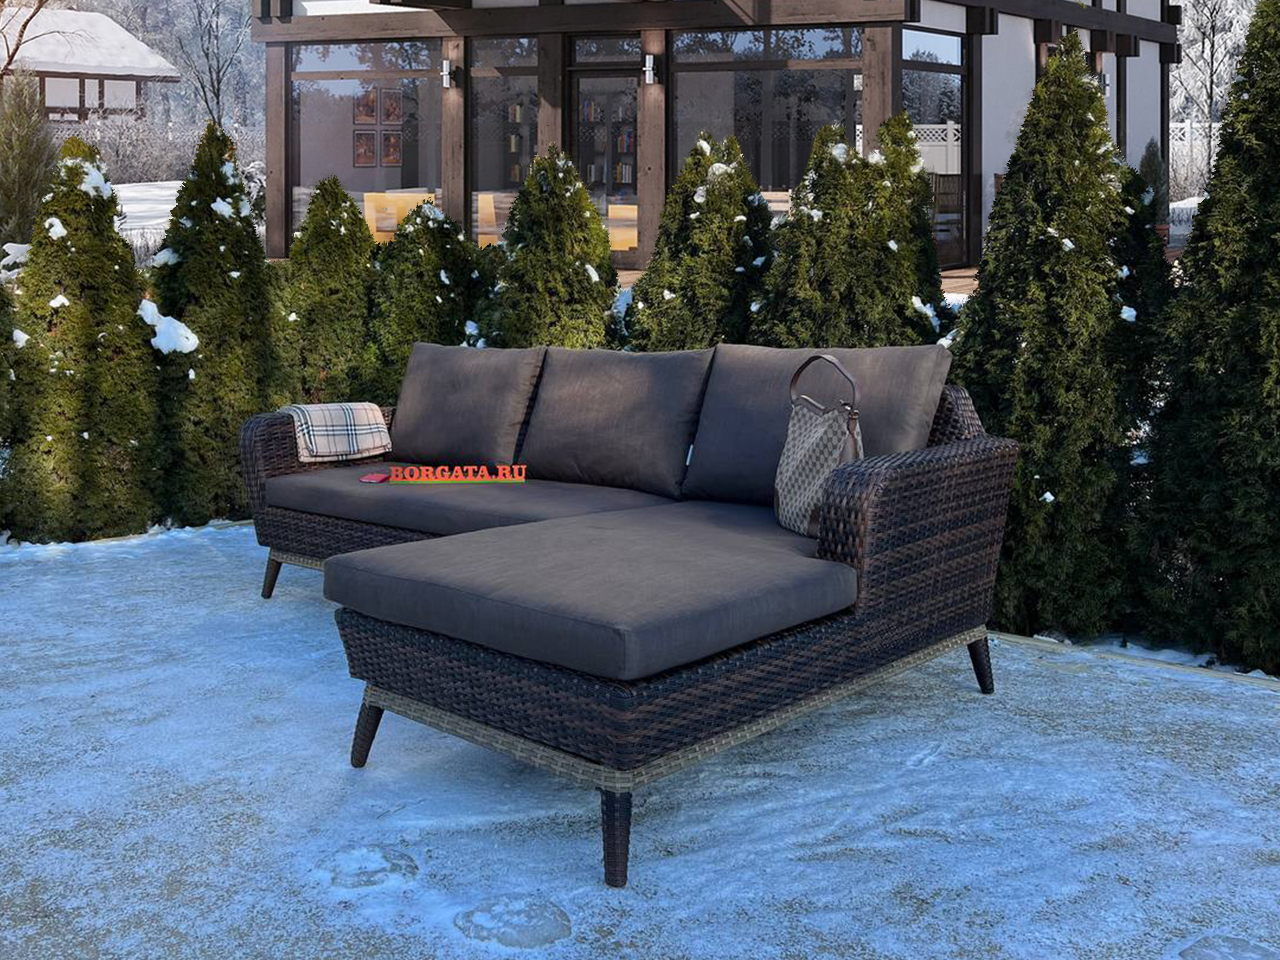 Угловой диван с оттоманкой 250*90*80 BABYLON LUX brown/nature для обустройства лаунж зоны в патио или на террасе